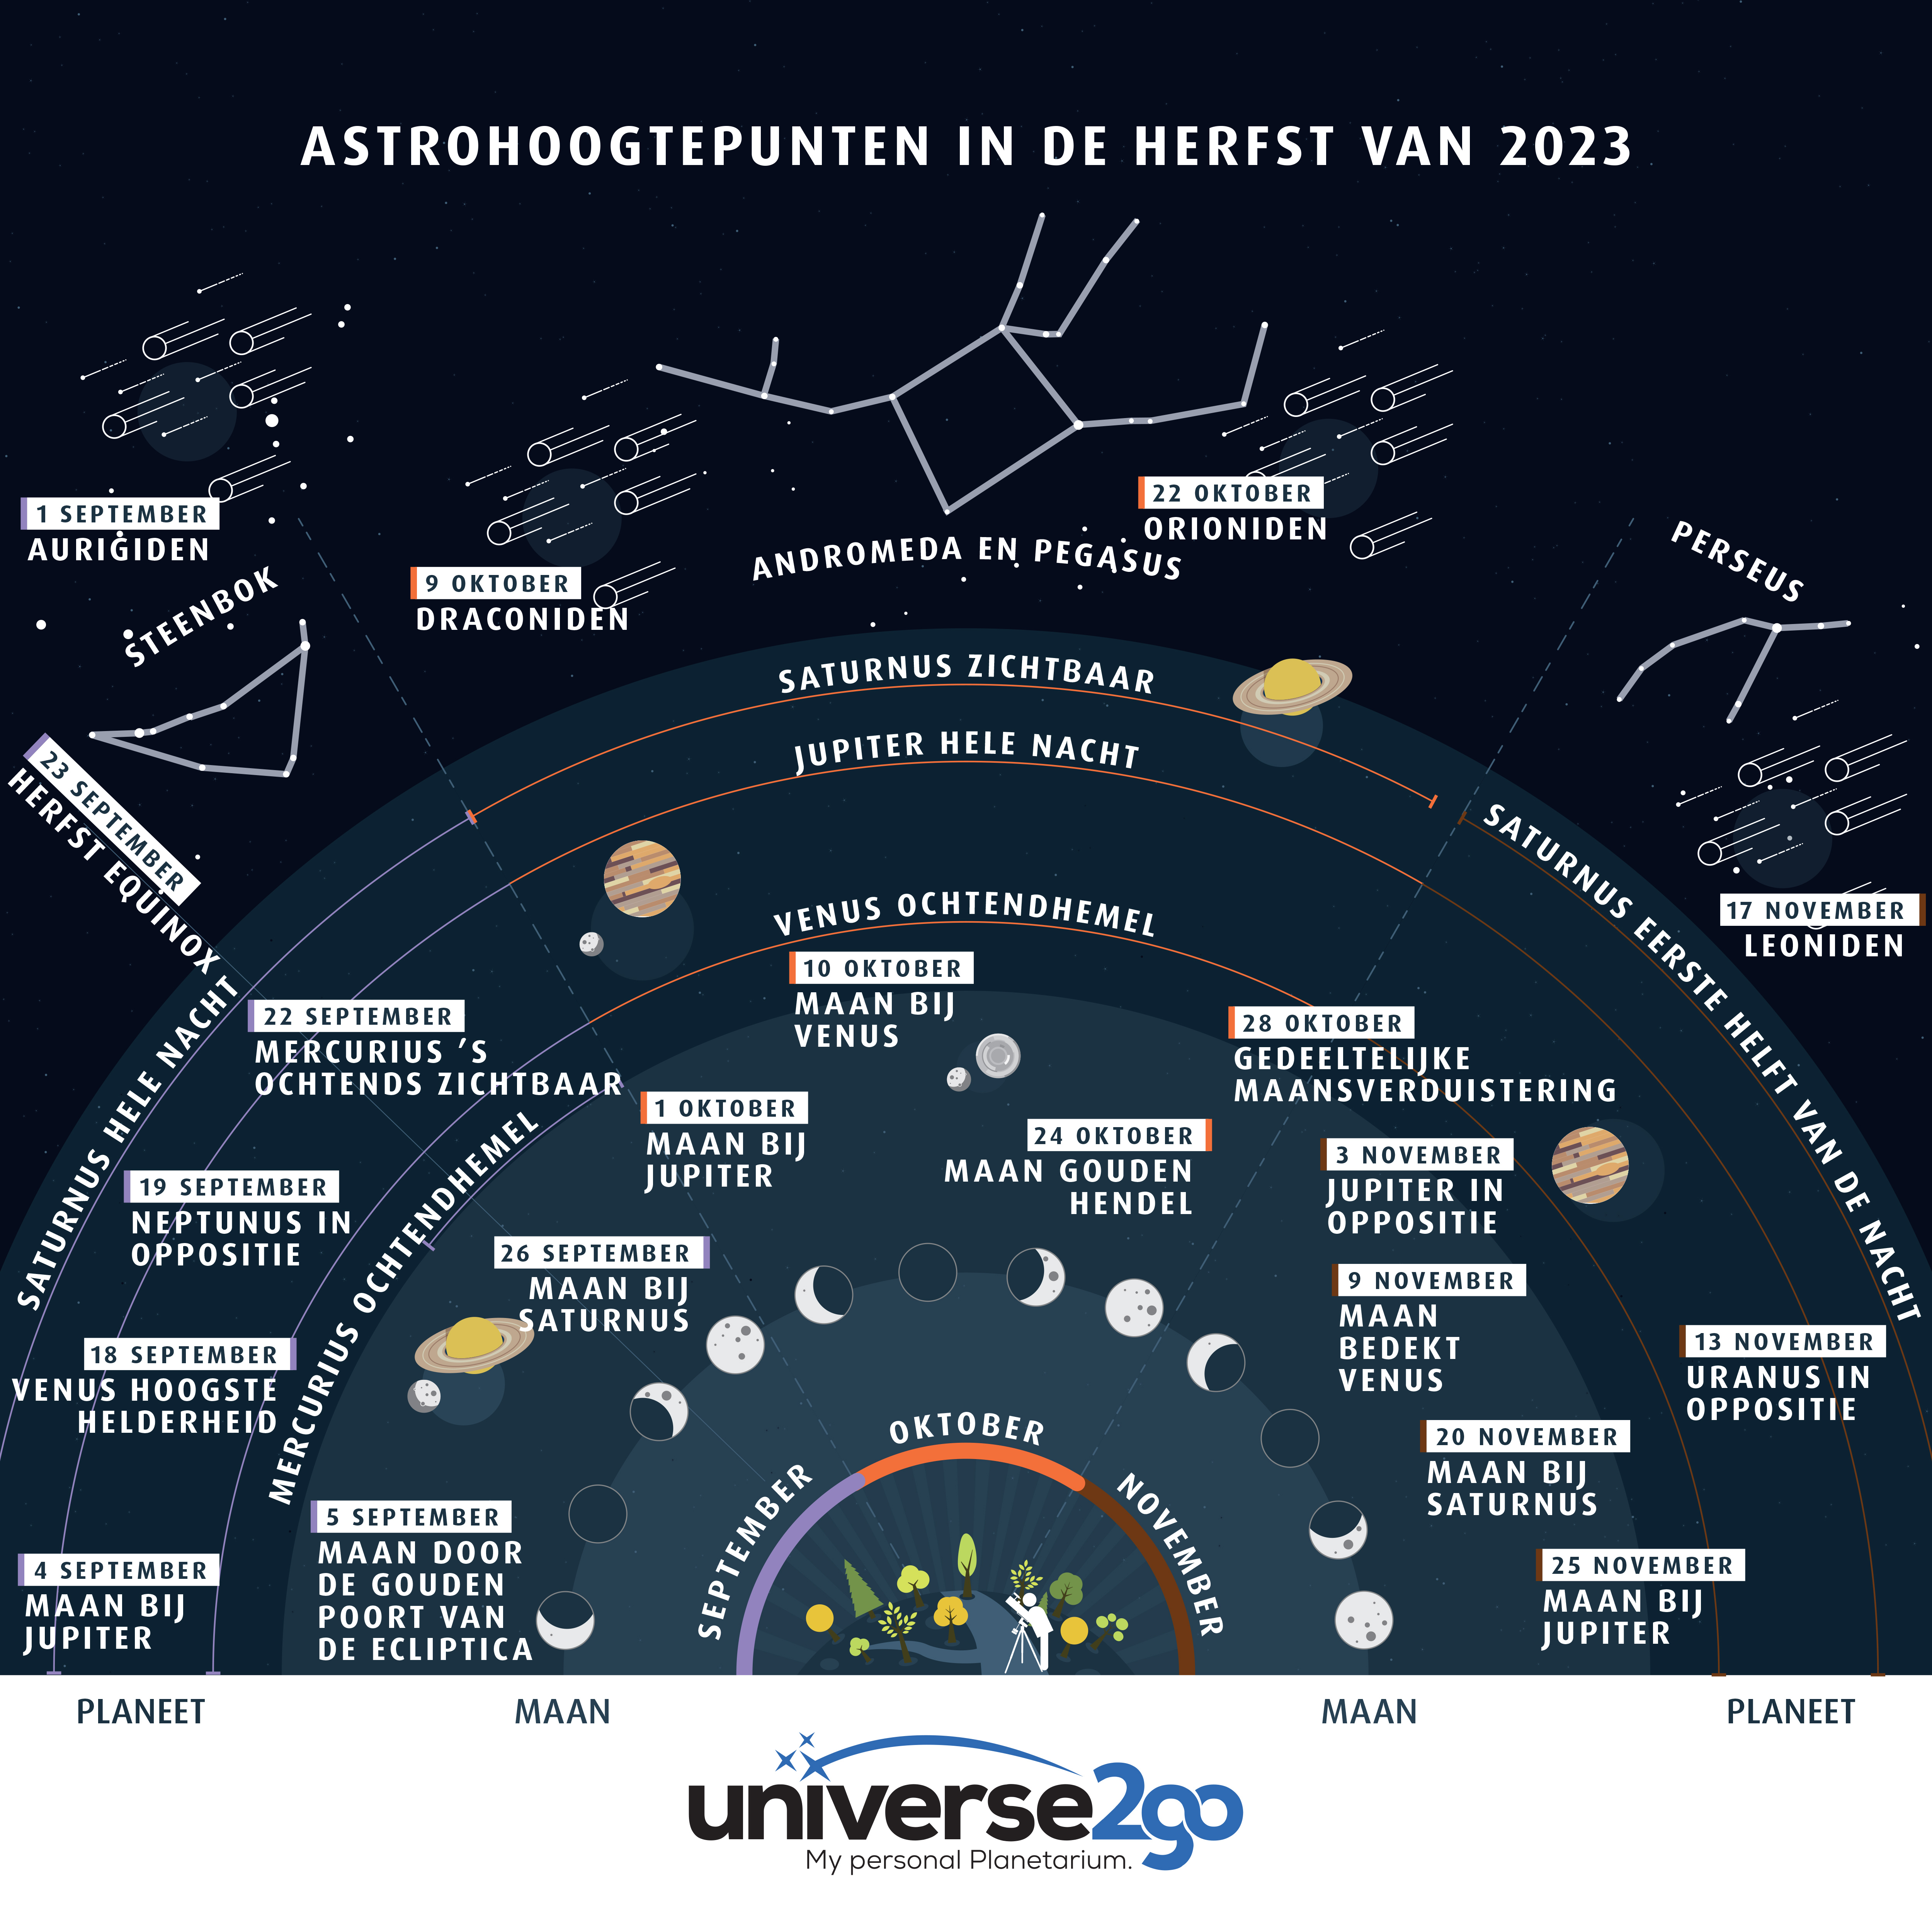 NL Astrohighlights Herbst 2023 Grafik Final